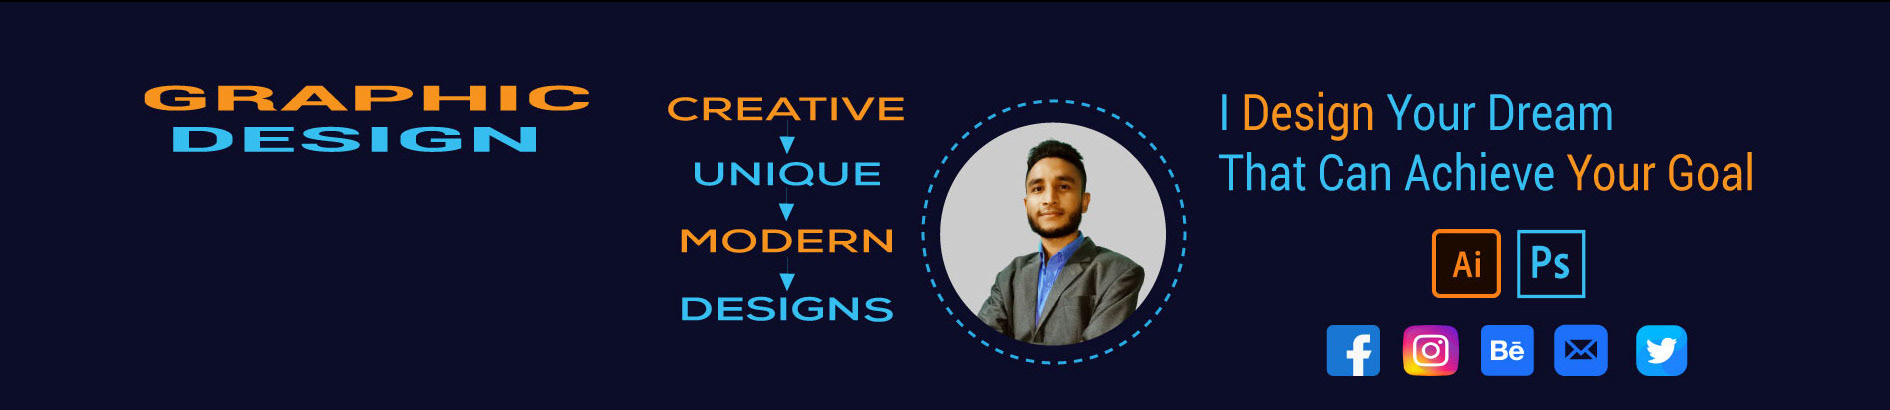 Design Store [ID: #.....32]'s profile banner